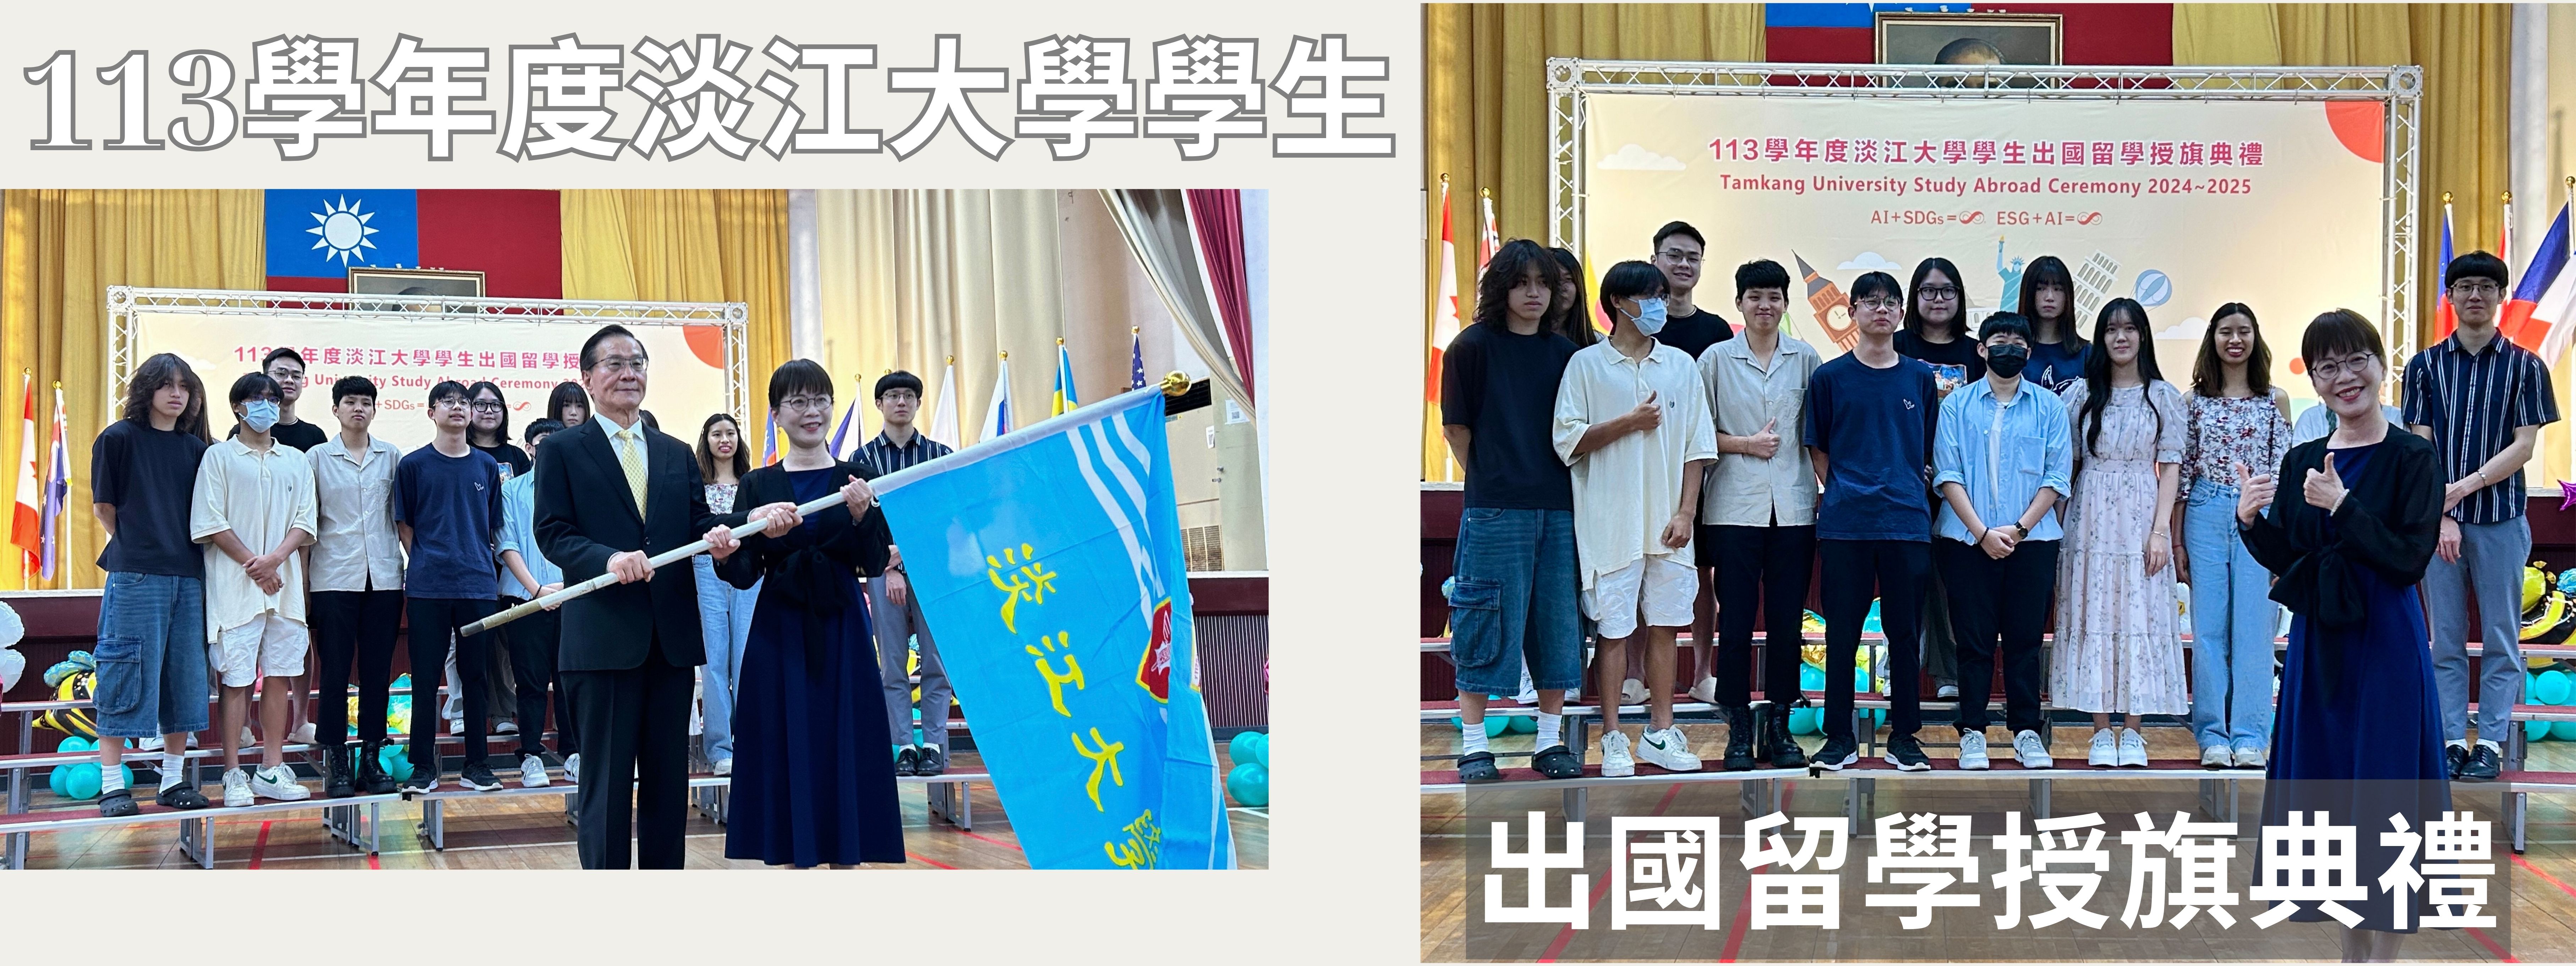 113學年度淡江大學學生出國留學授旗典禮